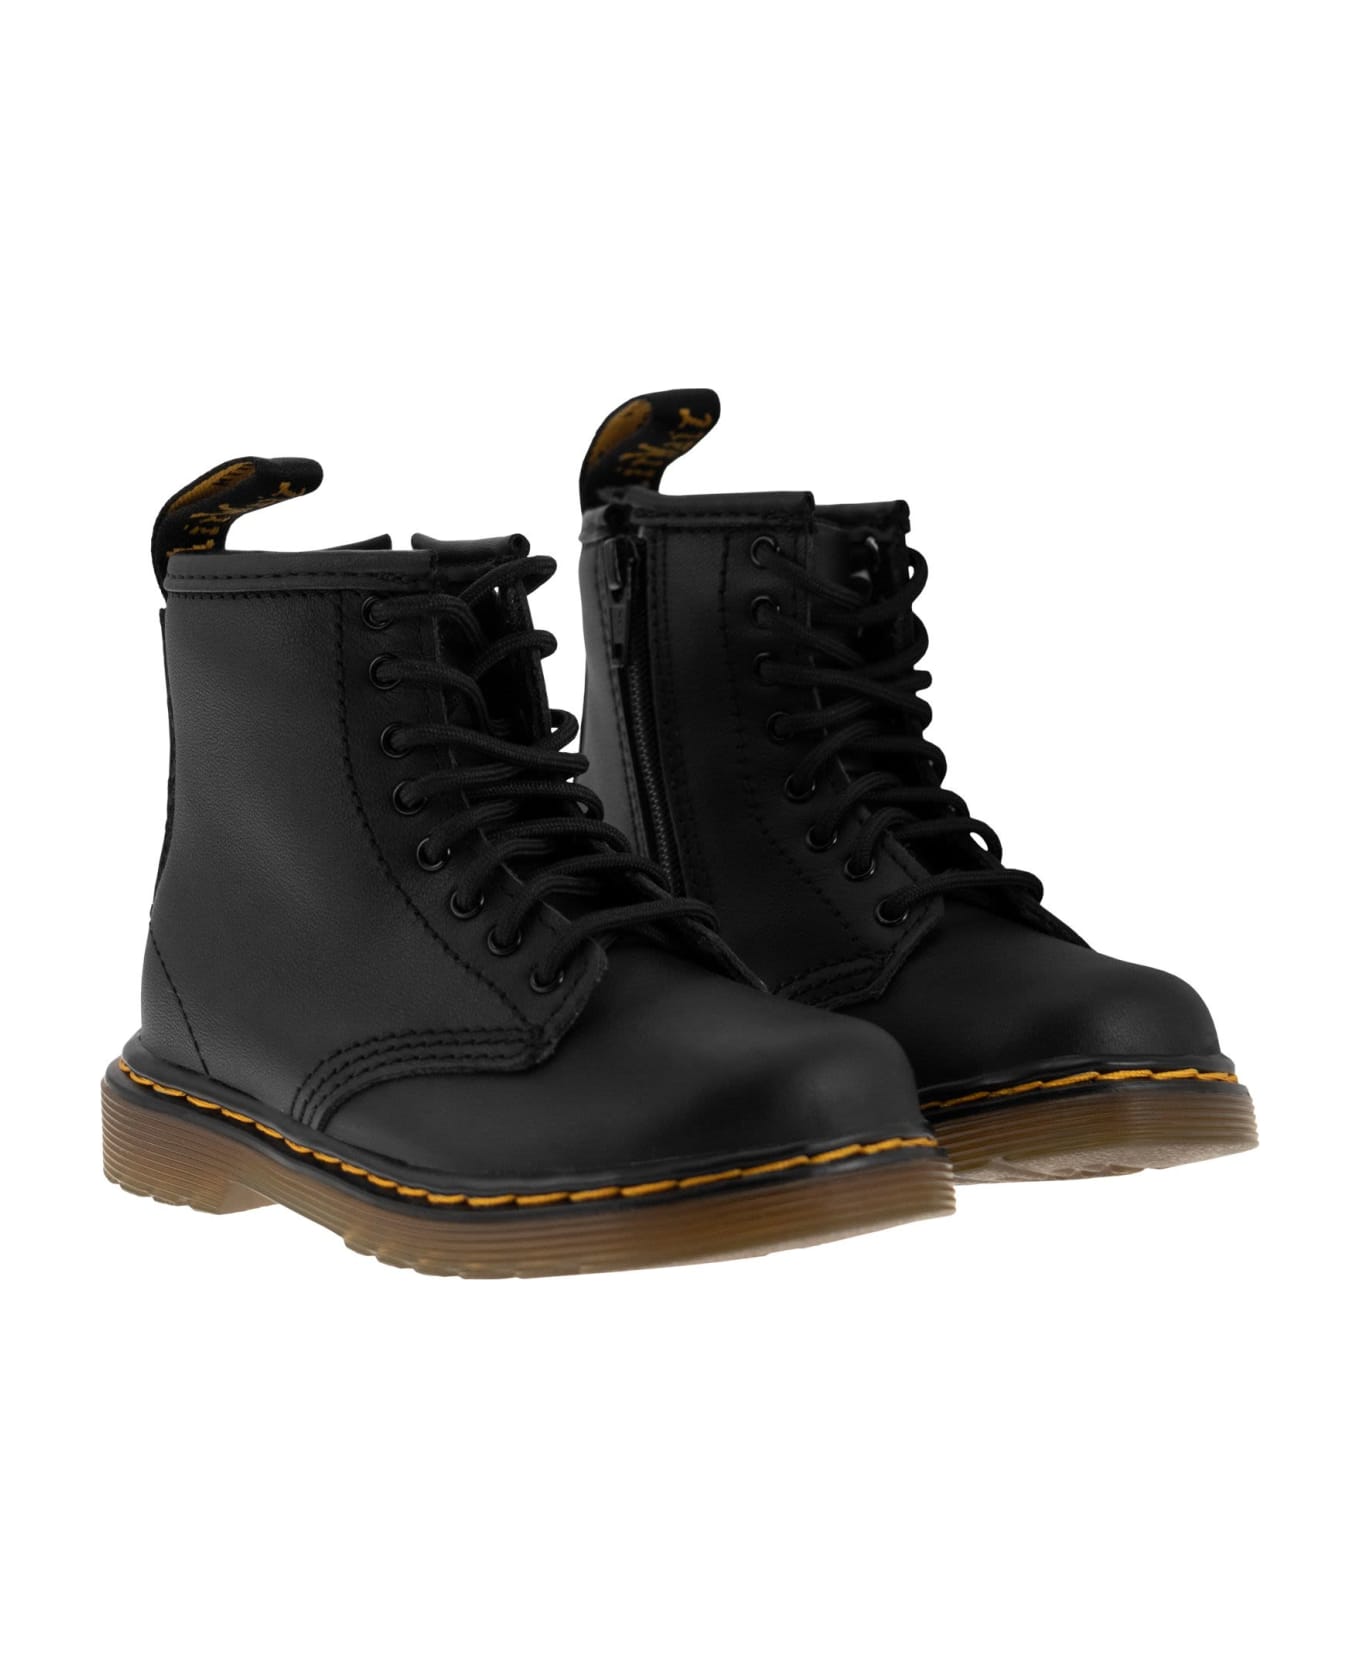 Dr. Martens 1460 - Matt Leather Lace-up Boots - Black